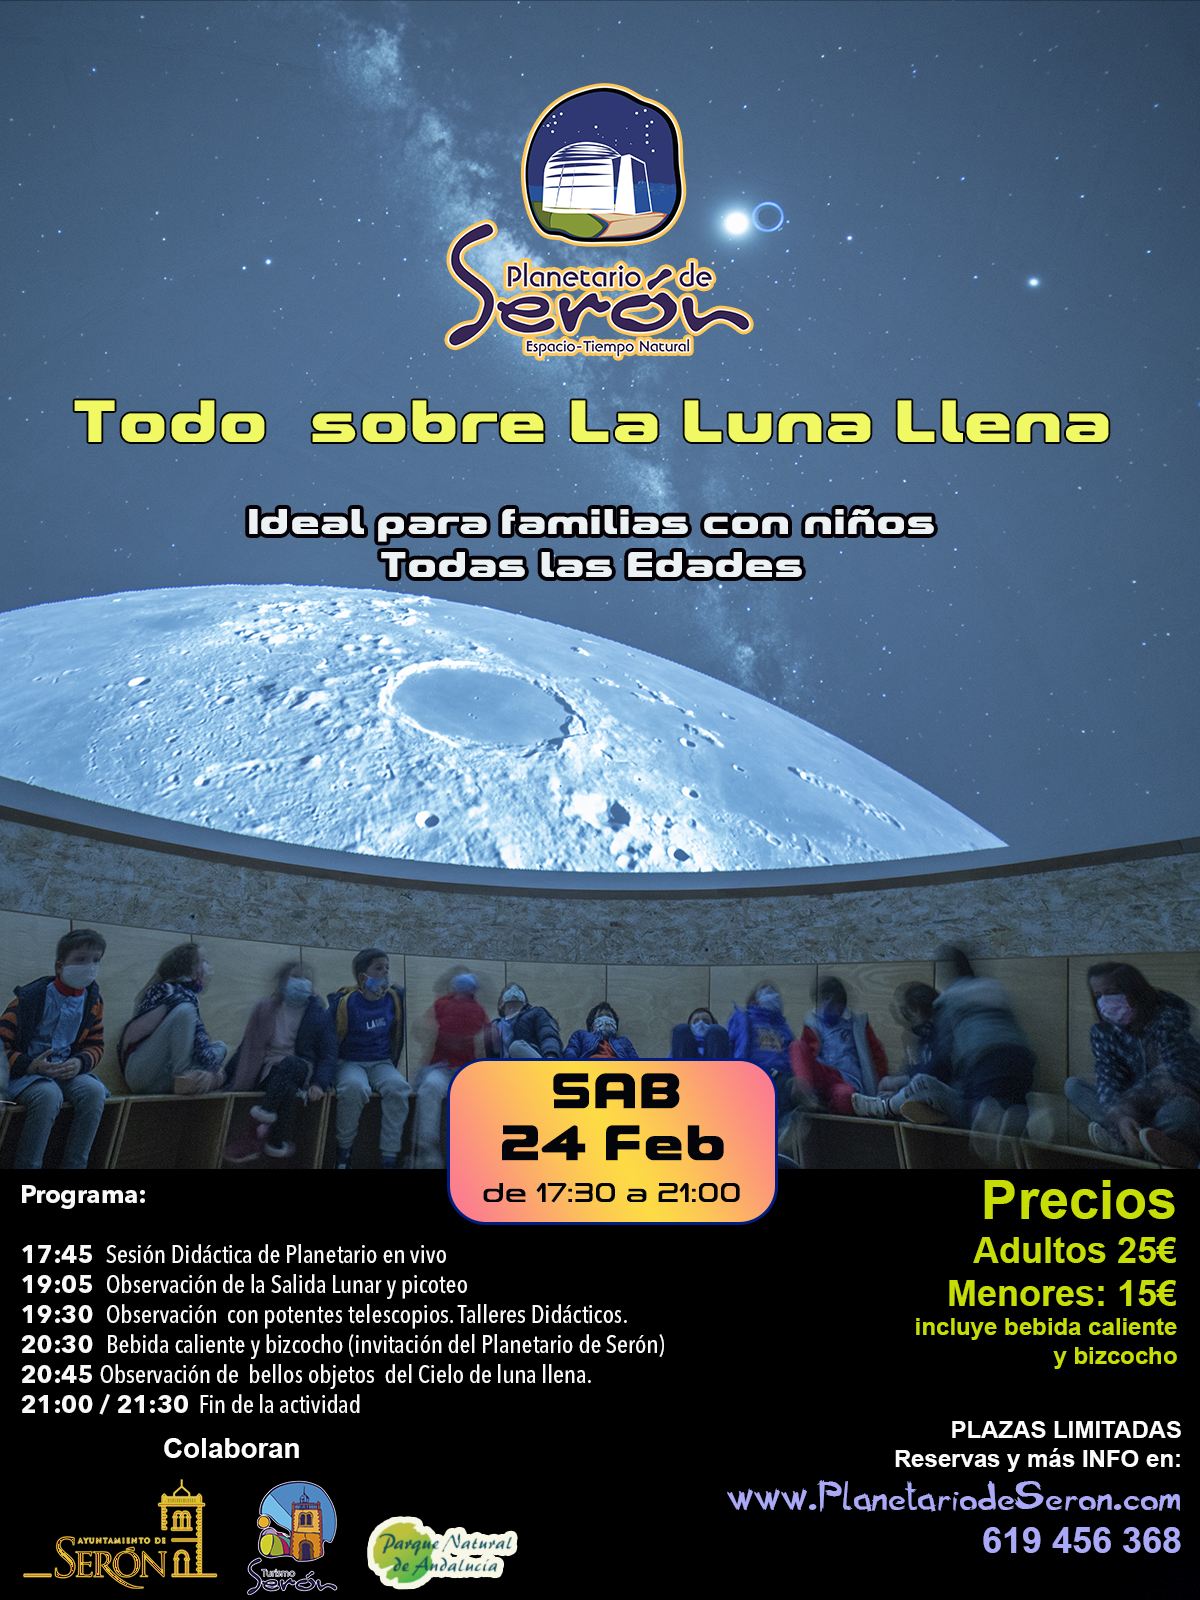 Todo sobre la luna llena. Planetario y observación del cielo, 24 Febrero 2024. Astroturismo Almeria. Planetario de Serón Almeria